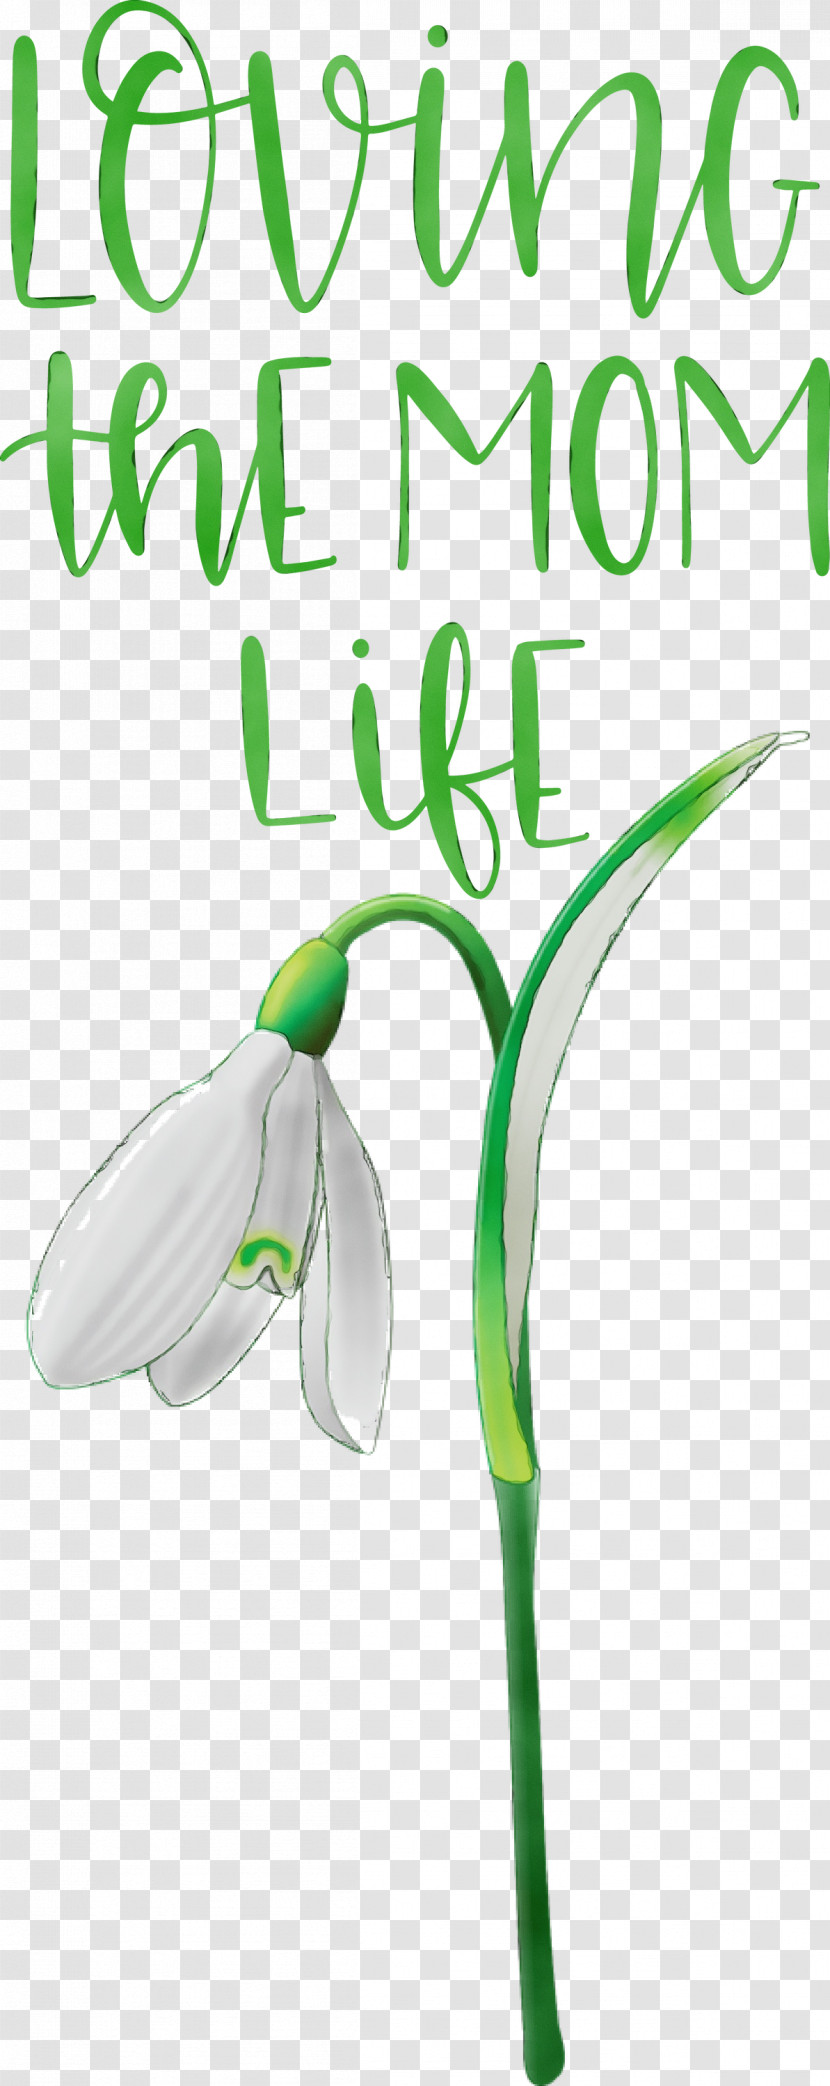 Font Green Flower Leaf Meter Transparent PNG